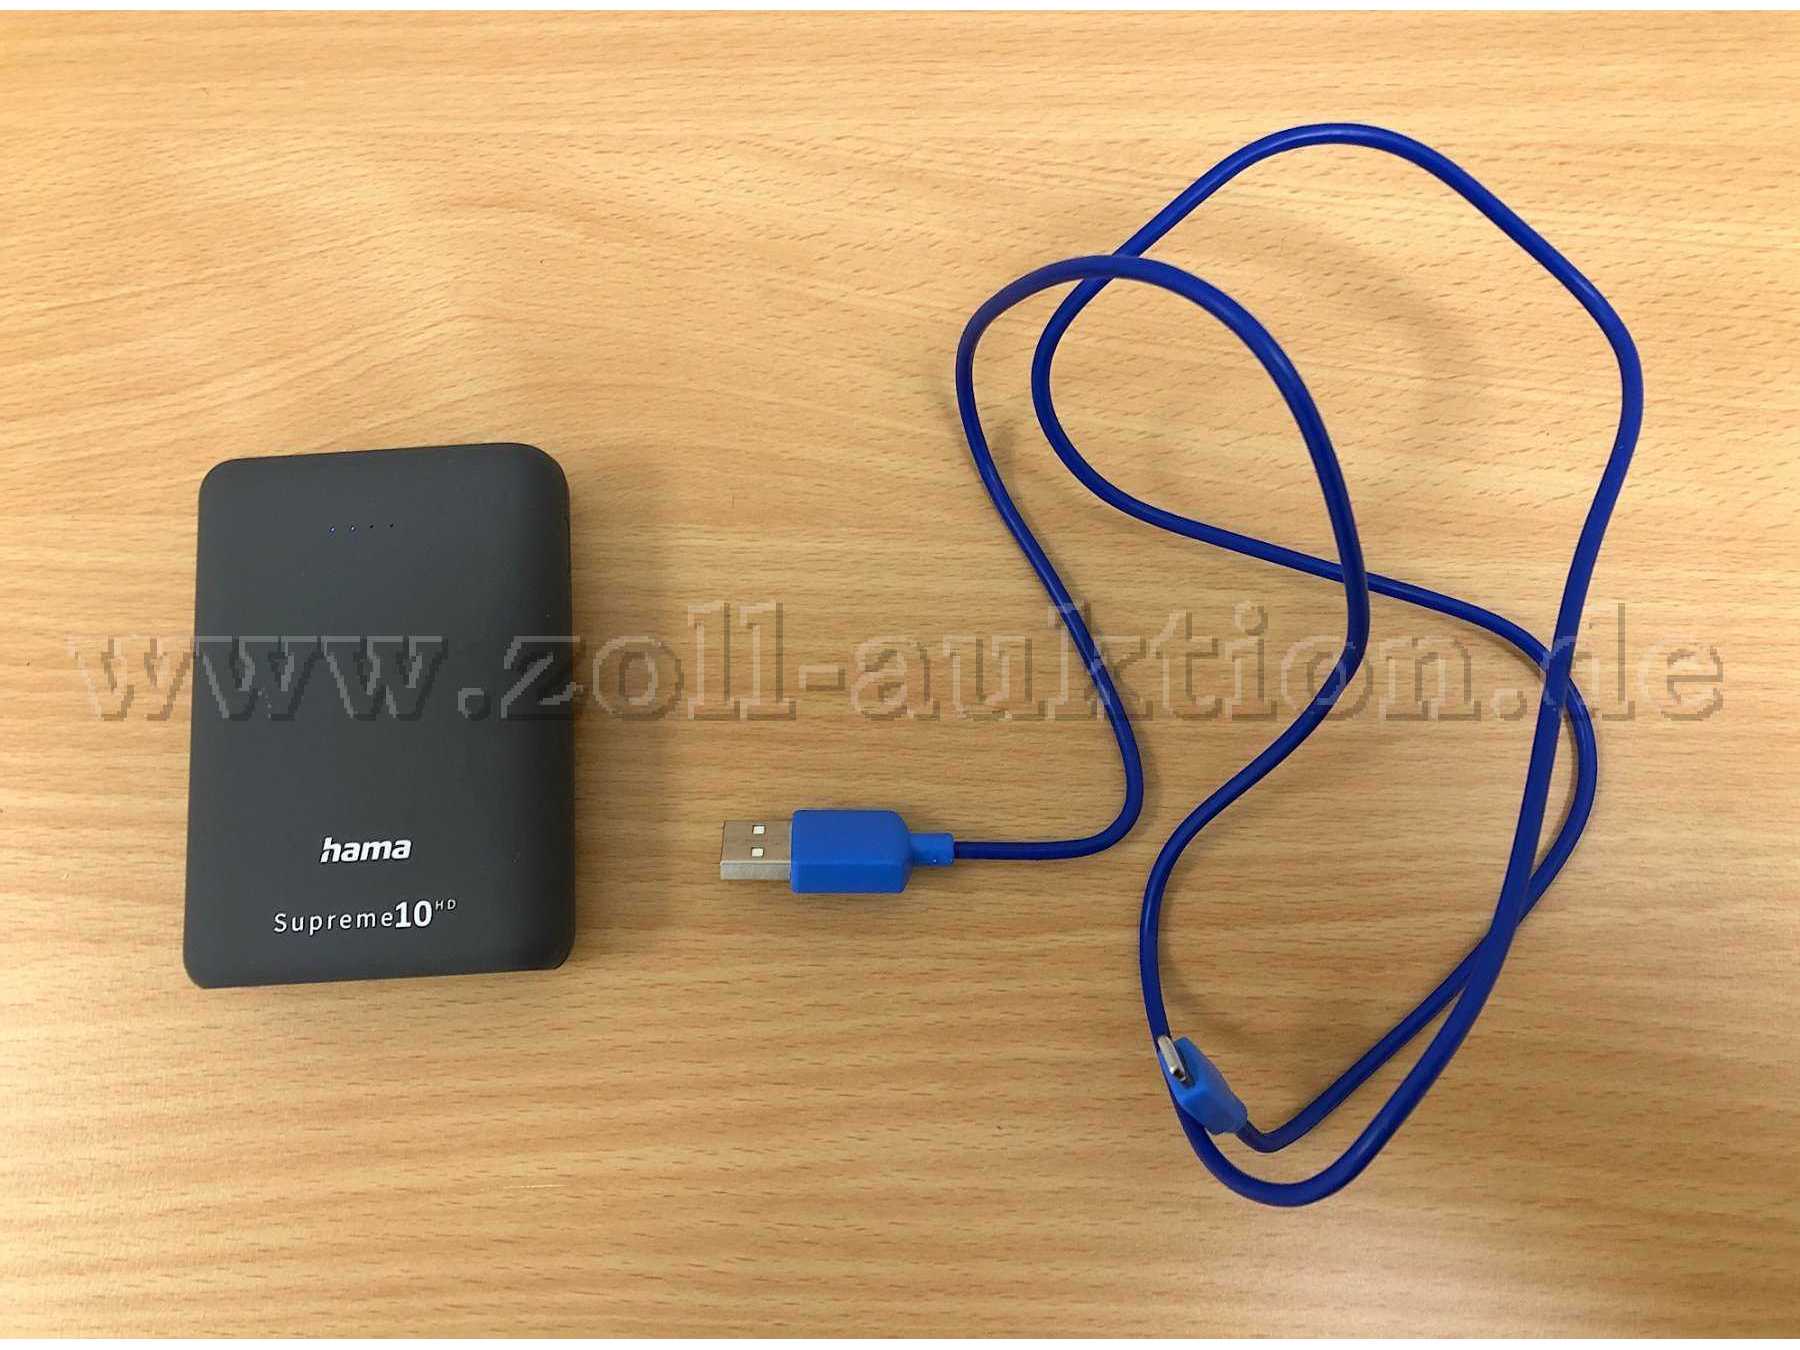 Powerbank von hama, USB-Kabel für ein iPhone (unbekannte Marke)